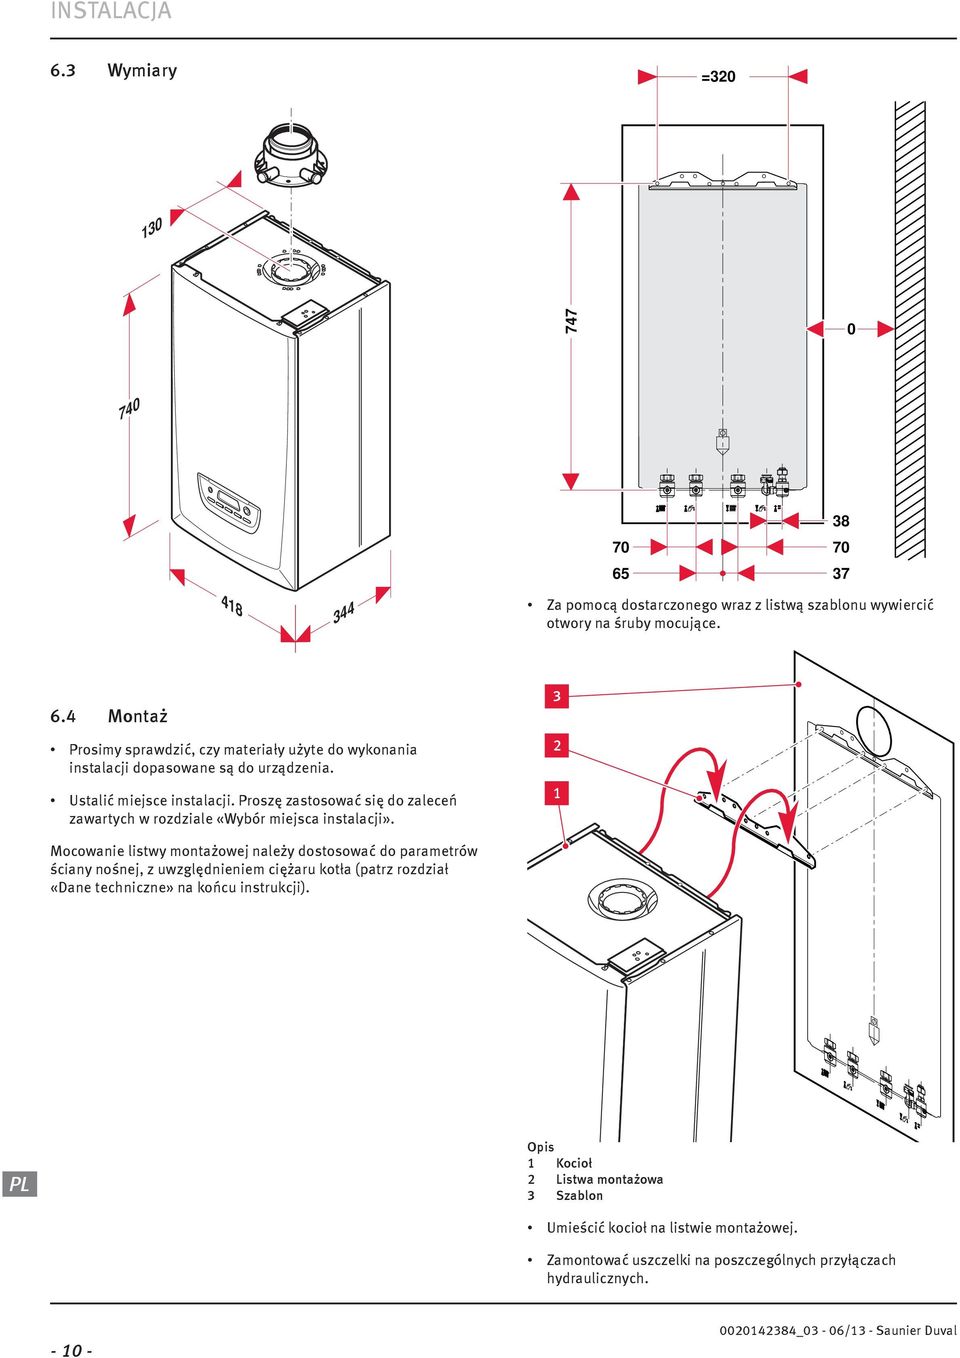 3 Mocowanie listwy montażowej należy dostosować do parametrów ściany nośnej, z uwzględnieniem ciężaru kotła (patrz rozdział «Dane techniczne» na końcu instrukcji).